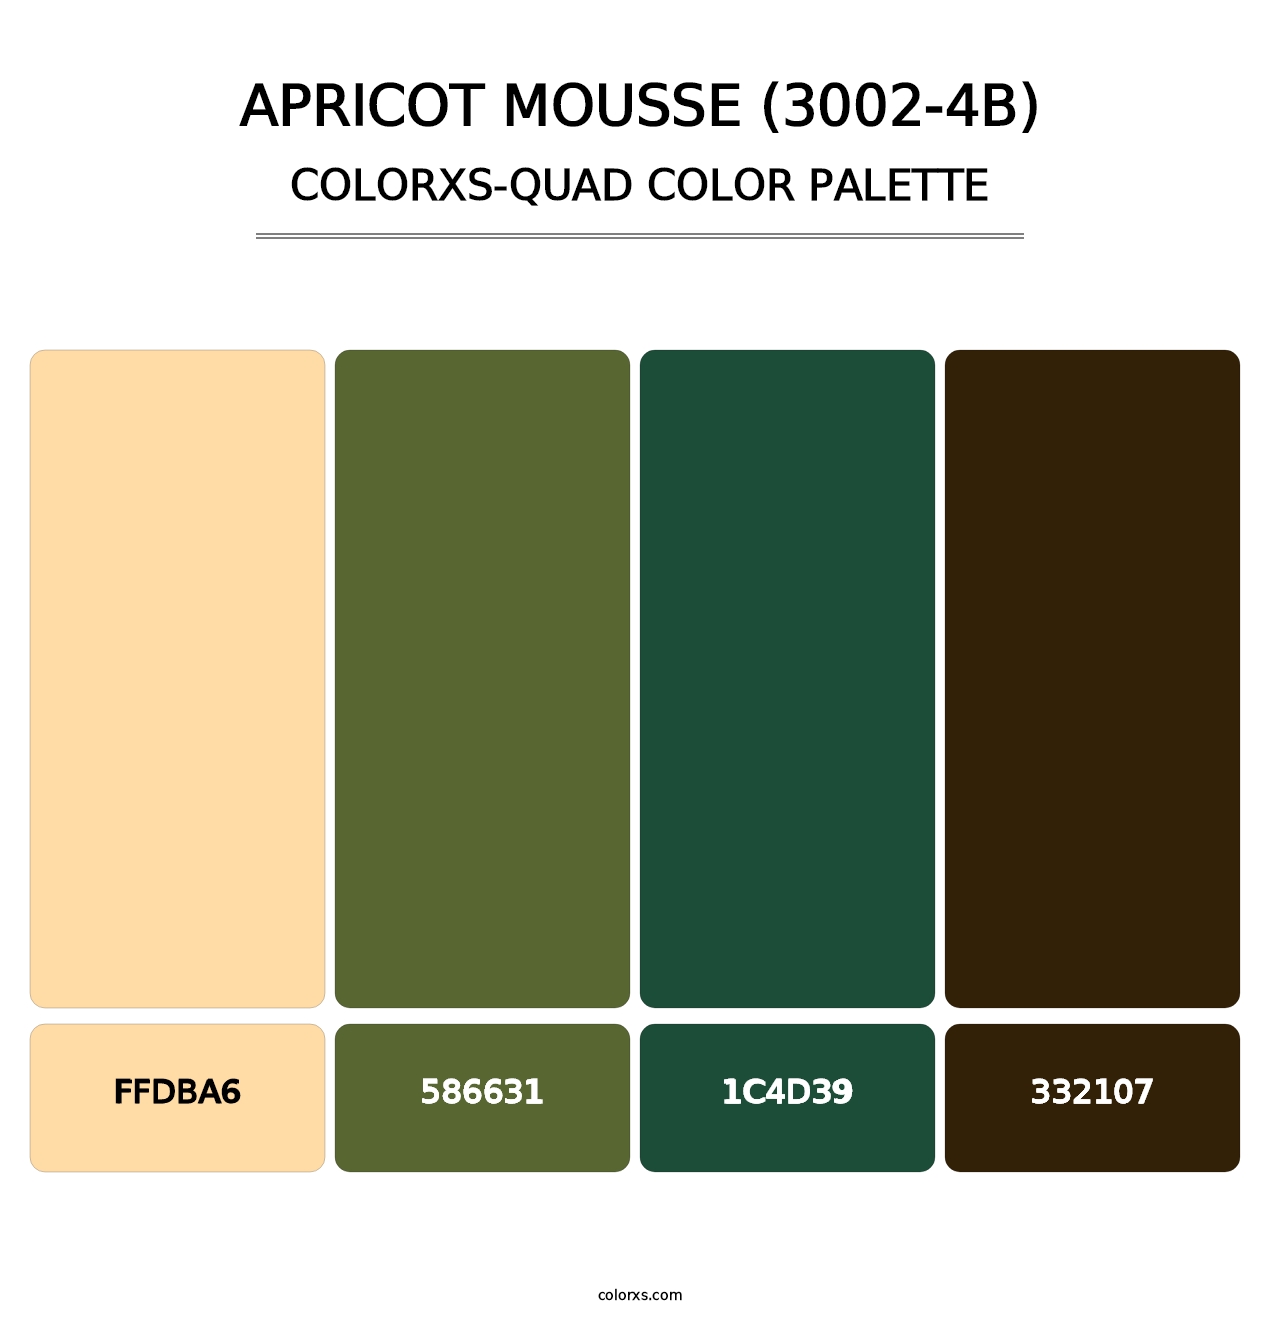 Apricot Mousse (3002-4B) - Colorxs Quad Palette